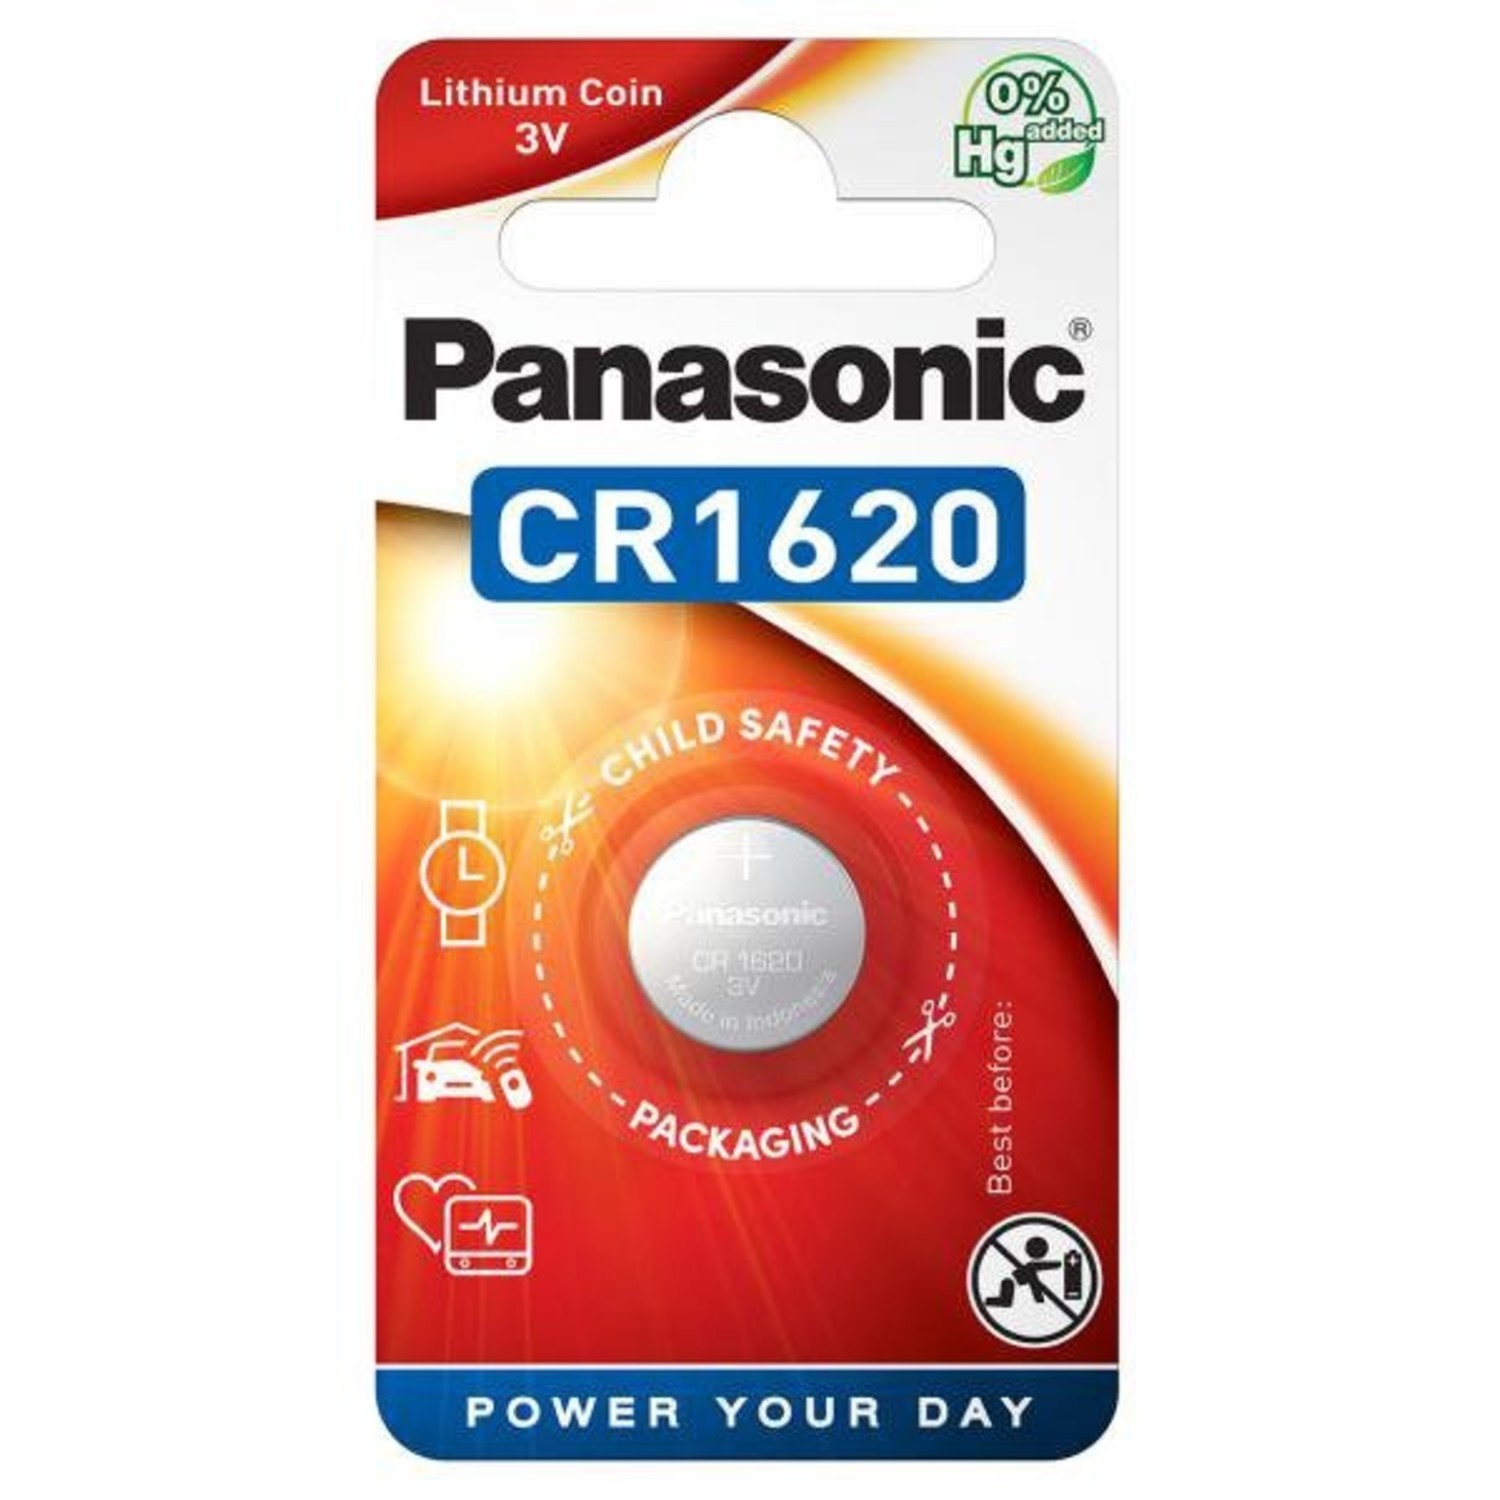 Twee graden reinigen sturen CR1620 Lithium Knoopcel batterij Panasonic - Beterbatterij